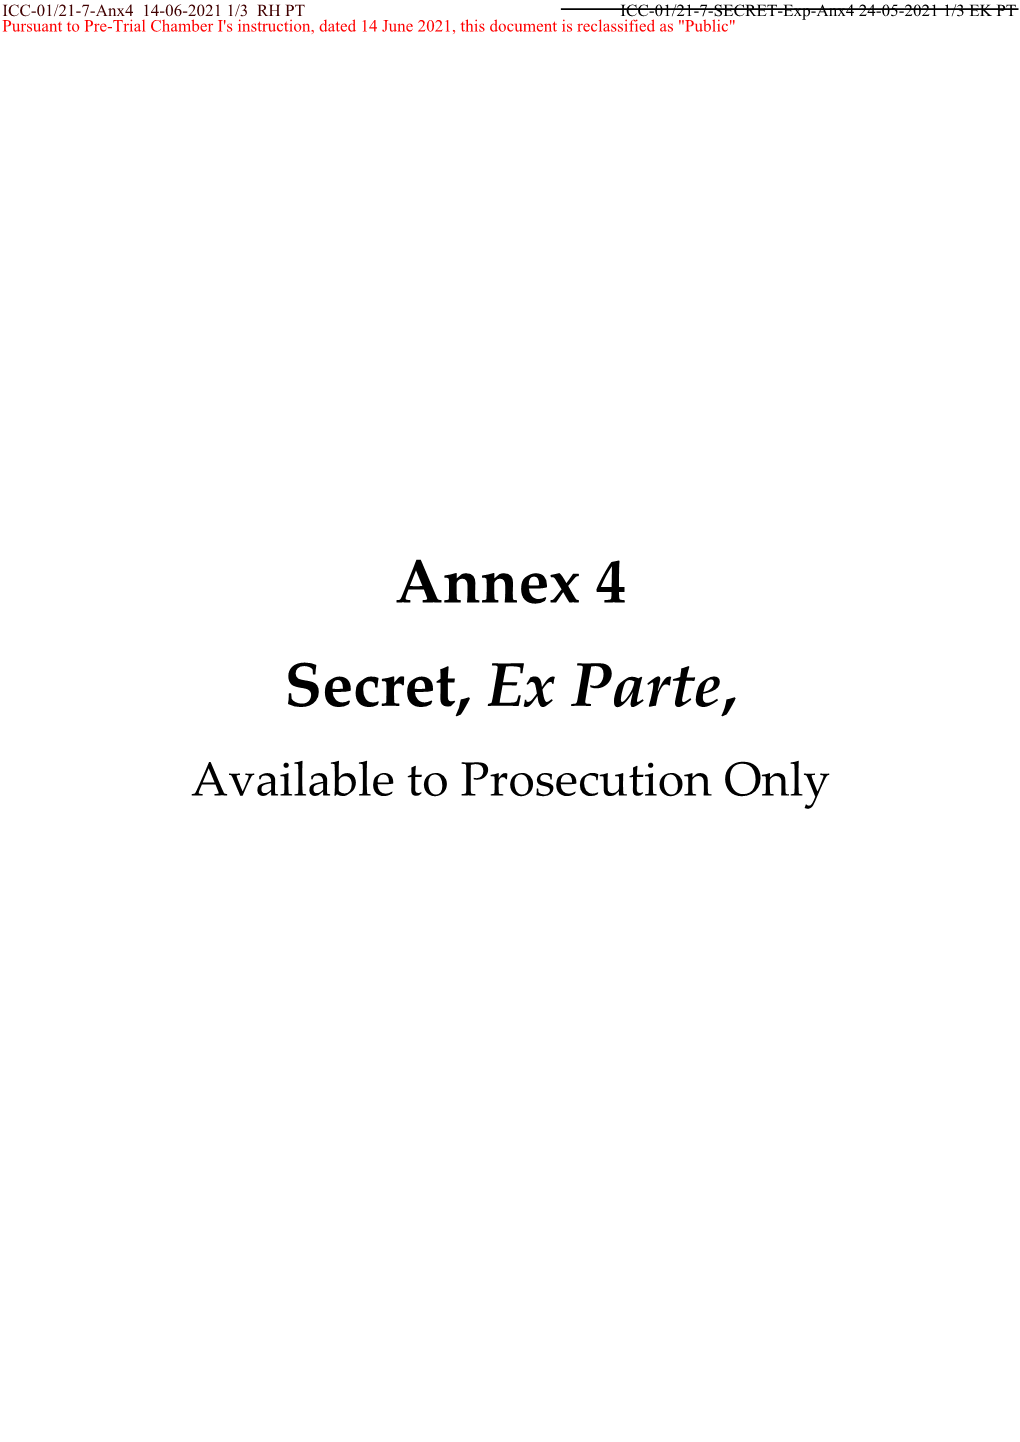 Annex 4 Secret, Ex Parte